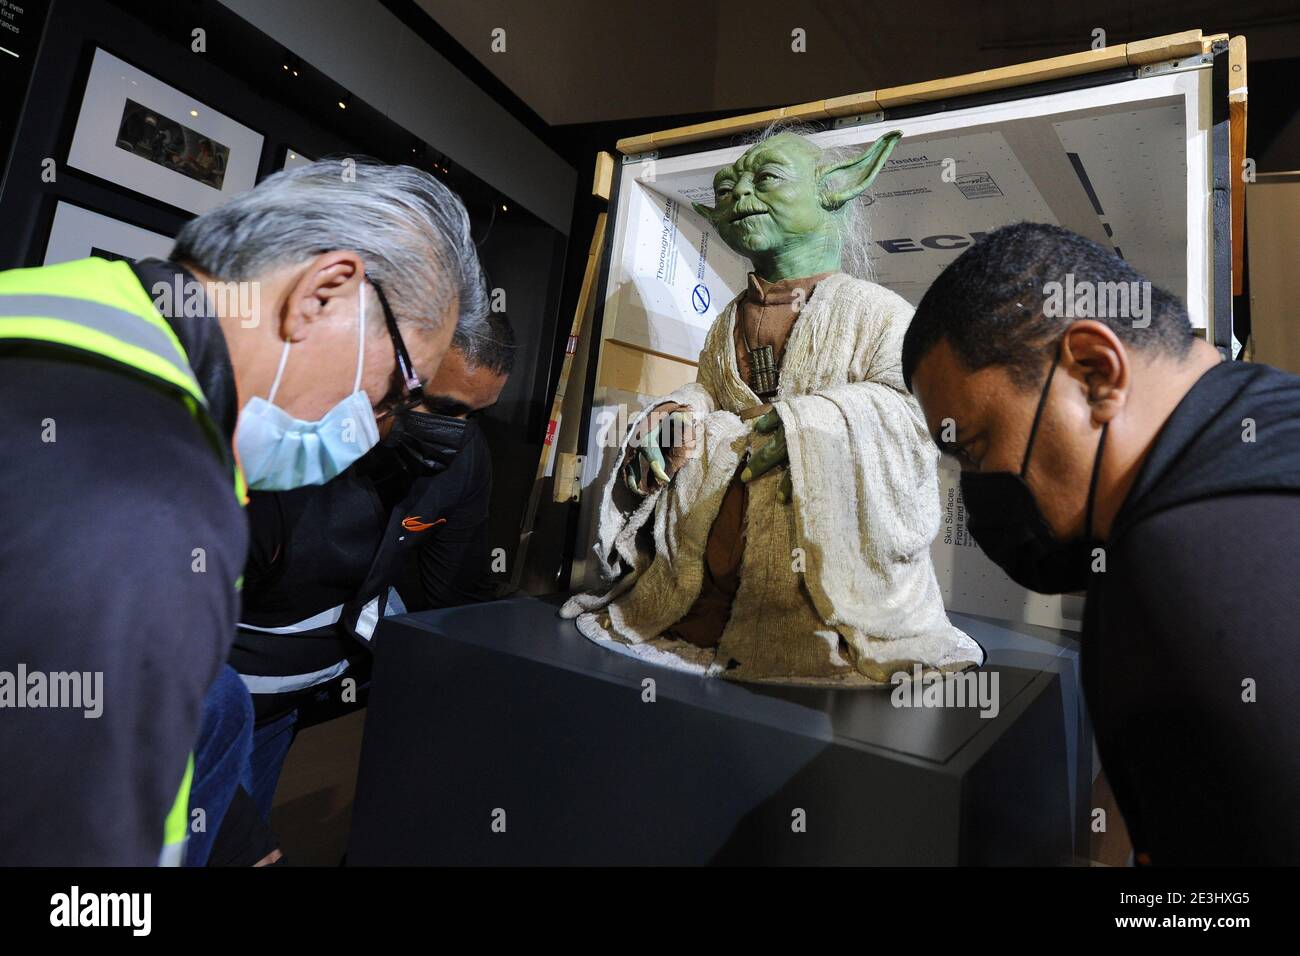 Singapur. Januar 2021. Arbeiter bewegen die lebensgroße Figur der Star Wars- Figur "Yoda", um sie am 19. Januar 2021 in der Ausstellung "Star Wars  Identities: The Exhibition" im Kunstwissenschaftlichen Museum in Singapur zu